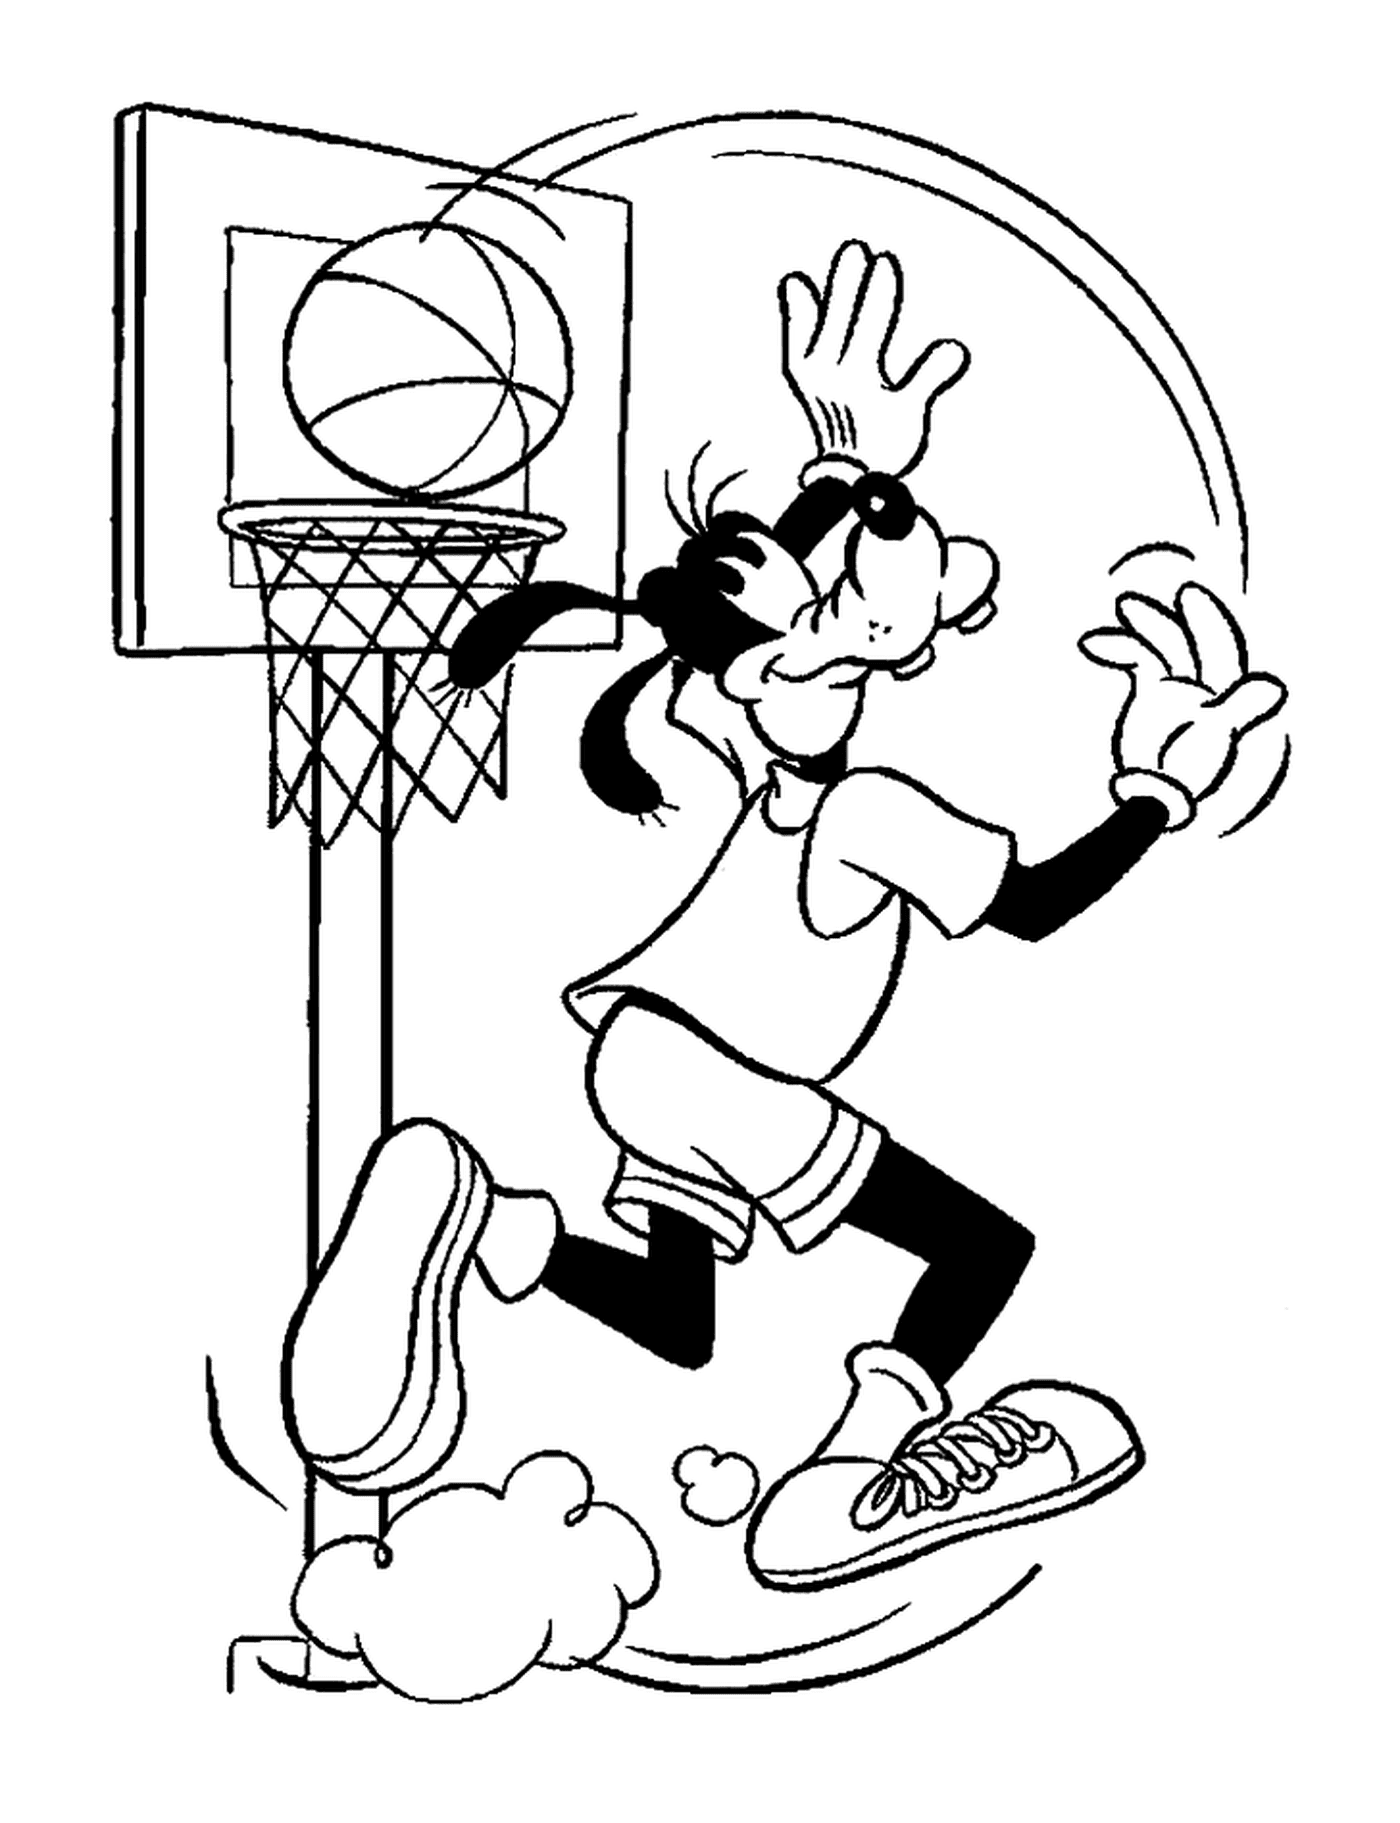  丁哥代表一个篮子 